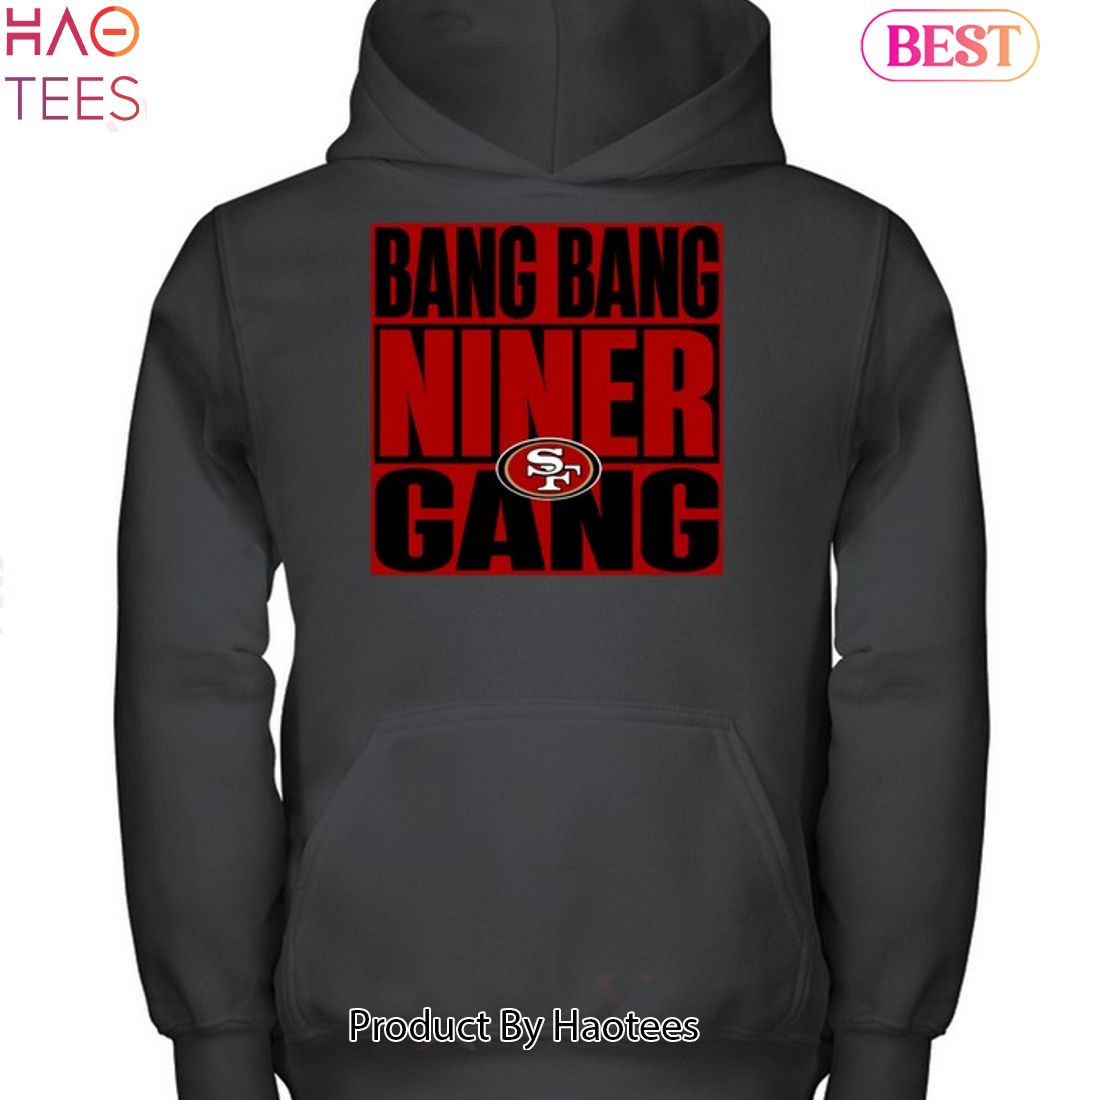 niner gang gear